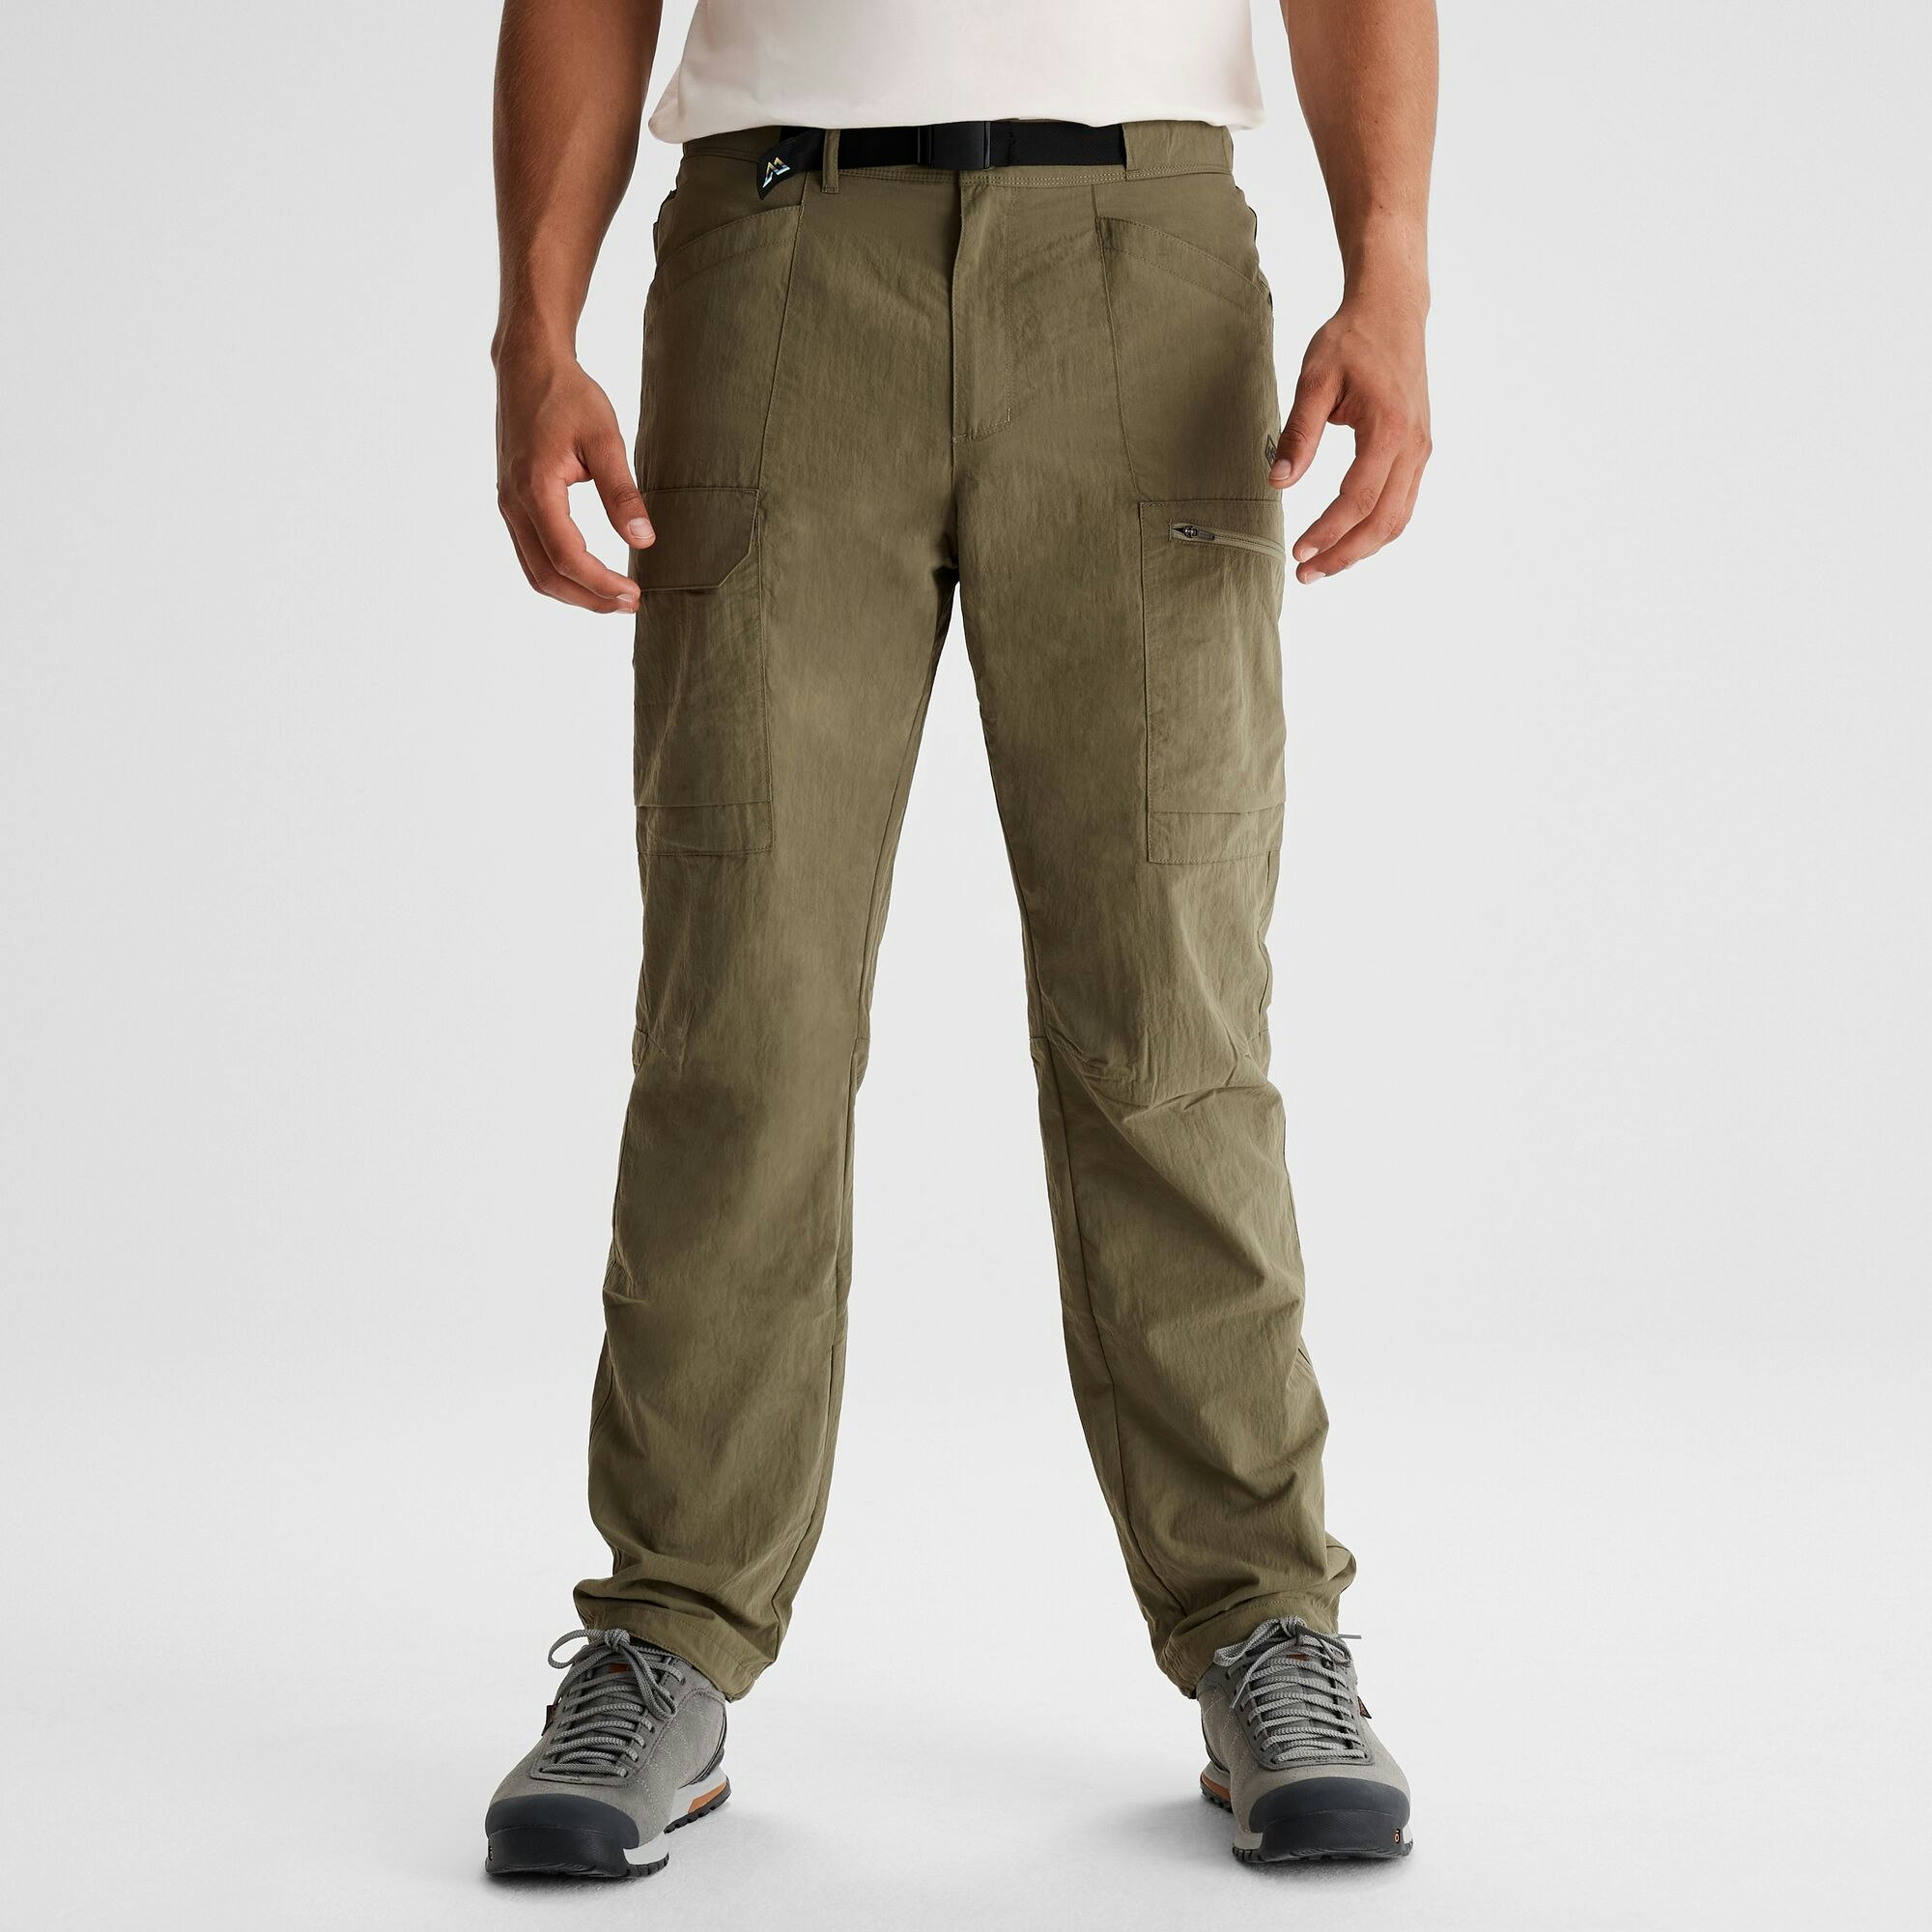 Basics - Basics Highwaisted Cargo Pants In Grey.🖤 Fabric... | Facebook